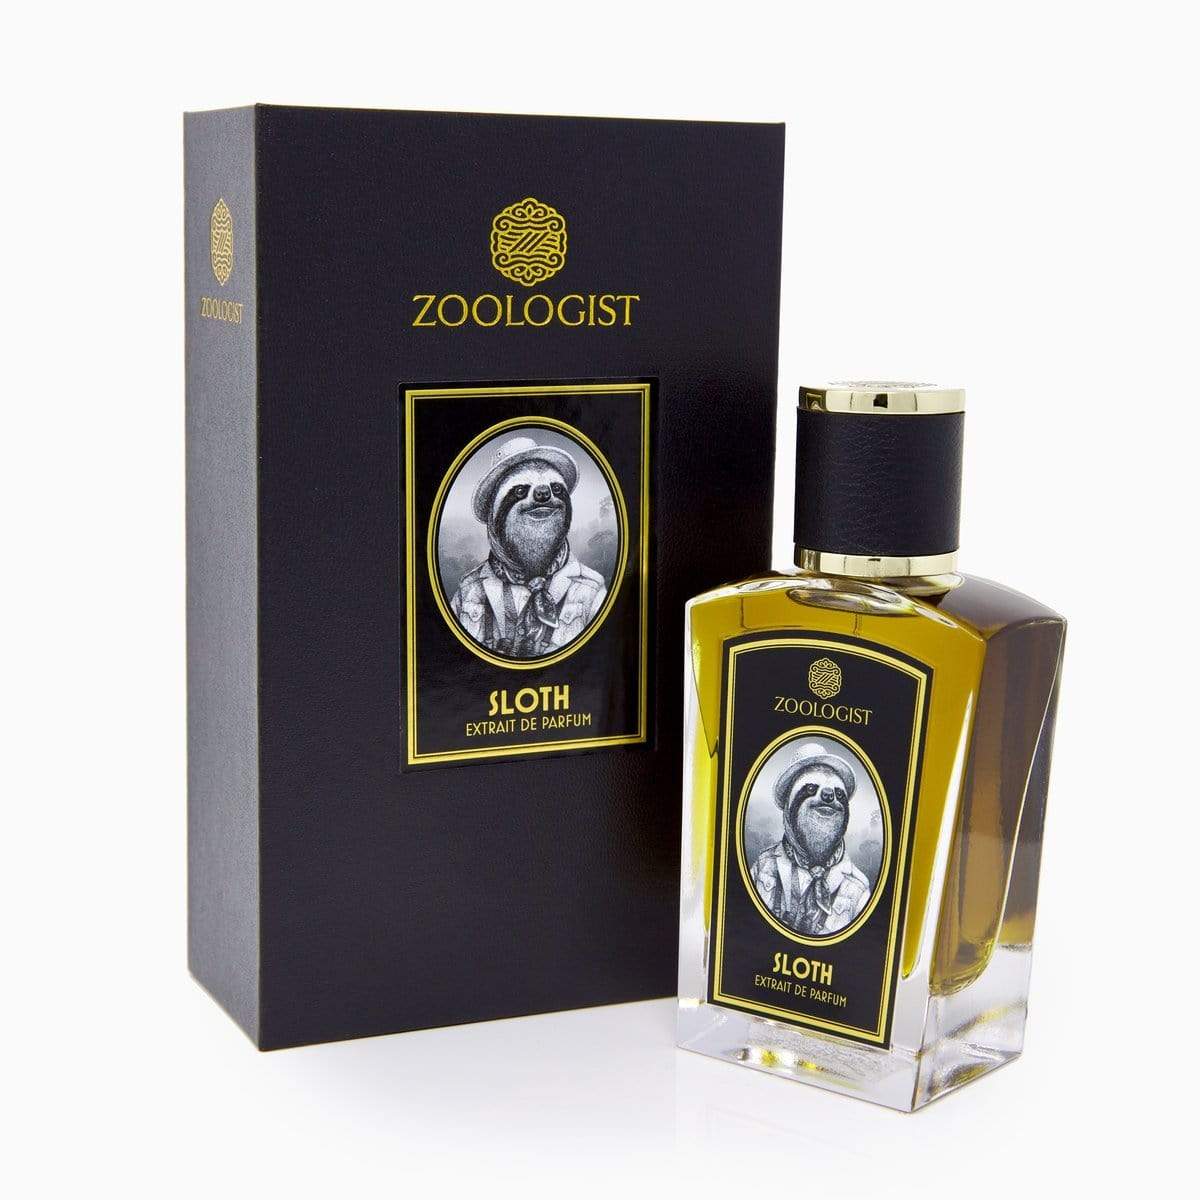  Sloth Deluxe Bottle Zoologist Perfumarie